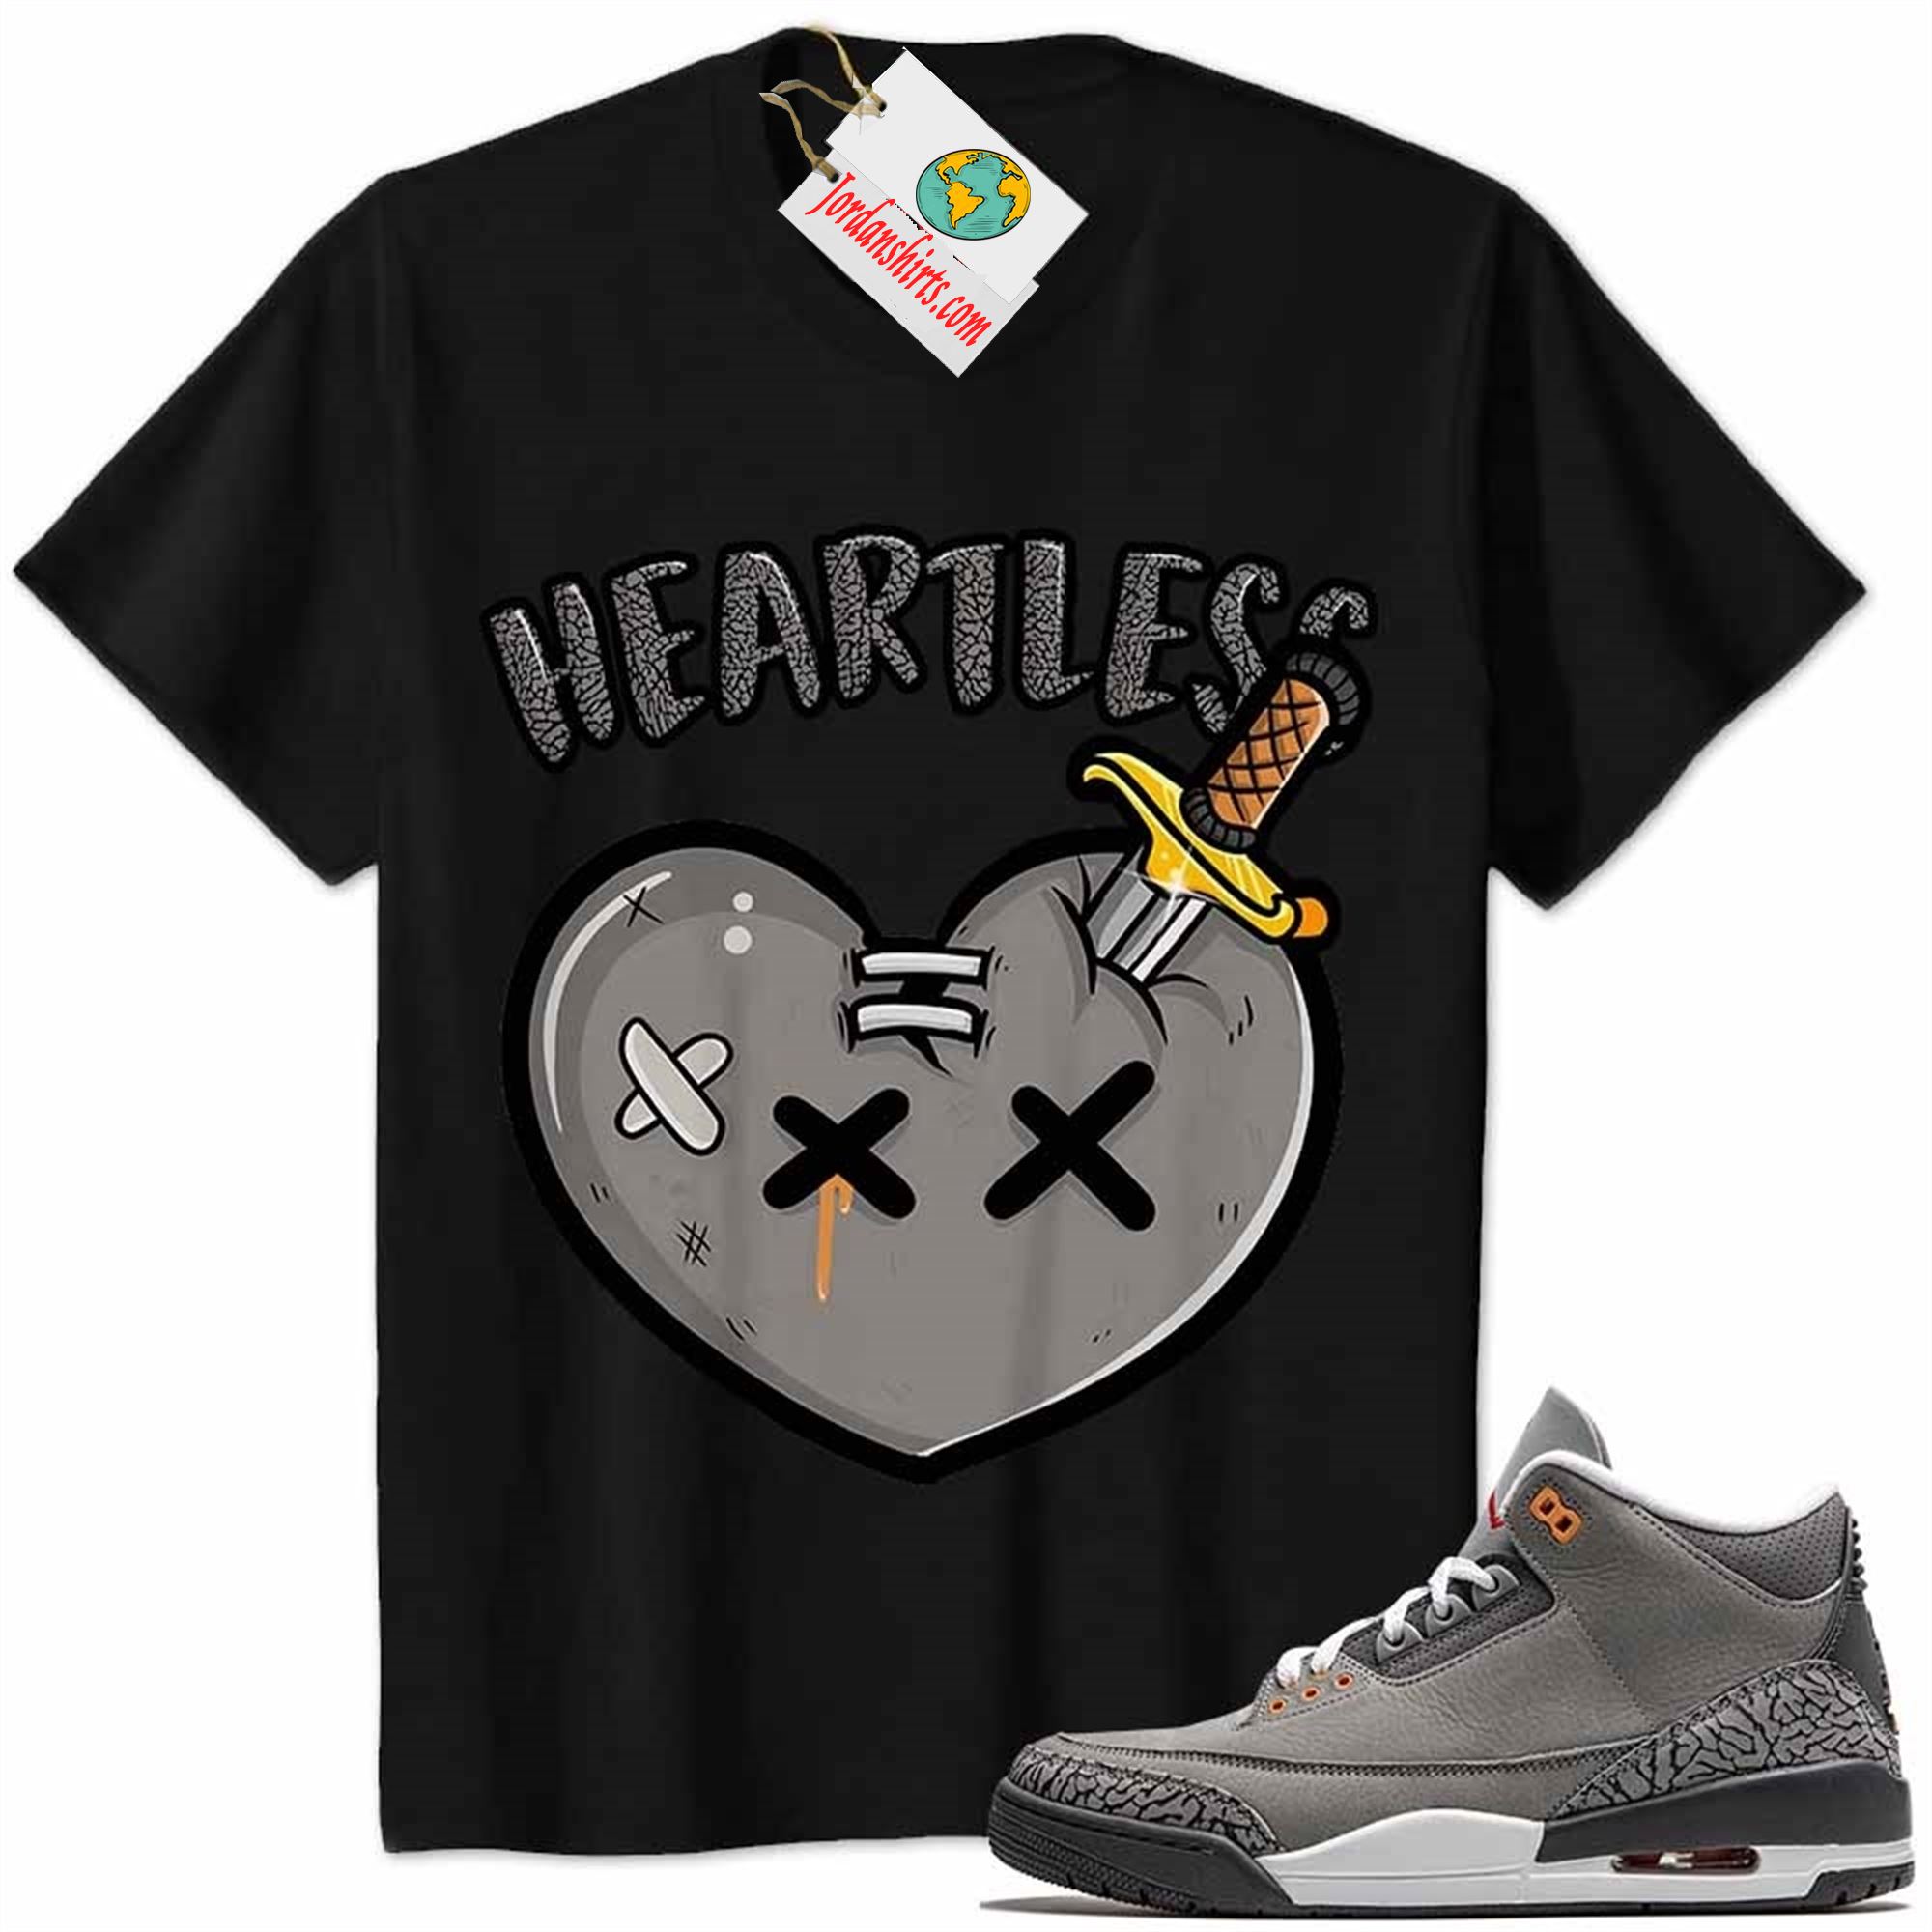 Jordan 3 Shirt, Crying Heart Heartless Black Air Jordan 3 Cool Grey 3s Size Up To 5xl